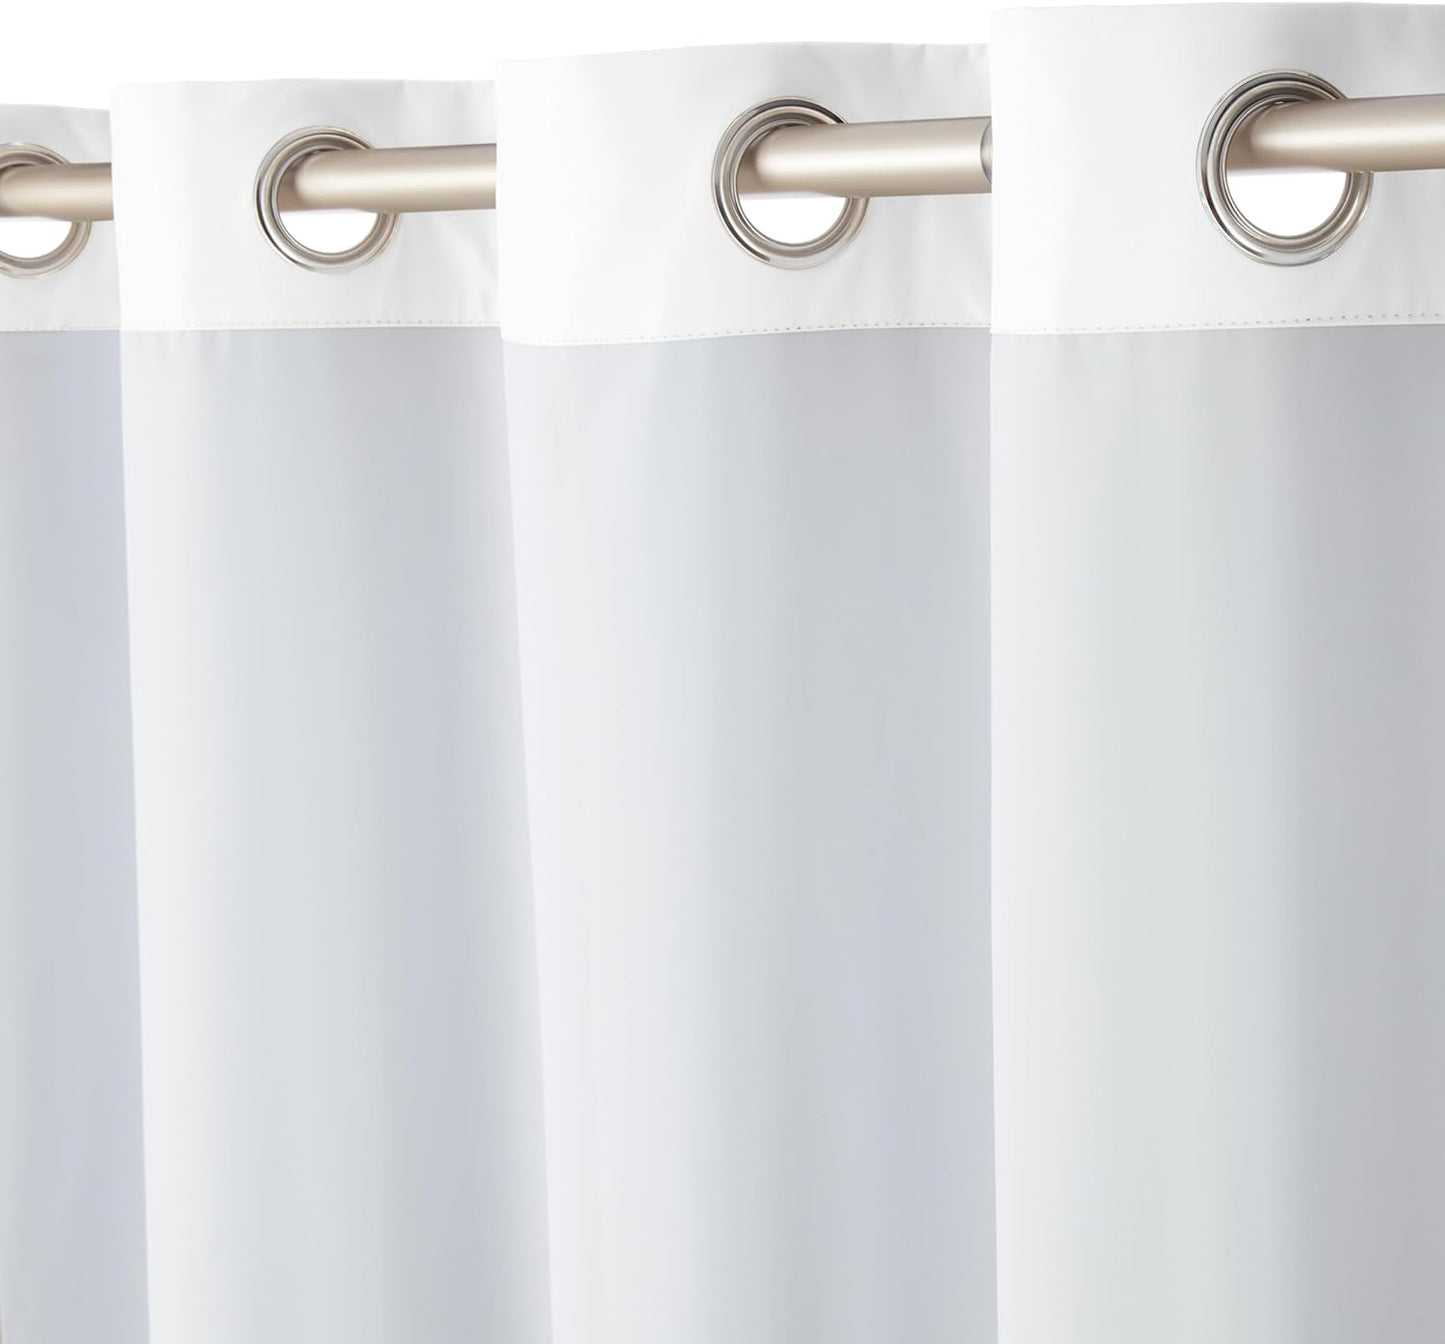 Amazon Basics Room Darkening Blackout Window Curtain with Grommets, 52 X 63 Inches, White - Set of 2  Amazon Basics   